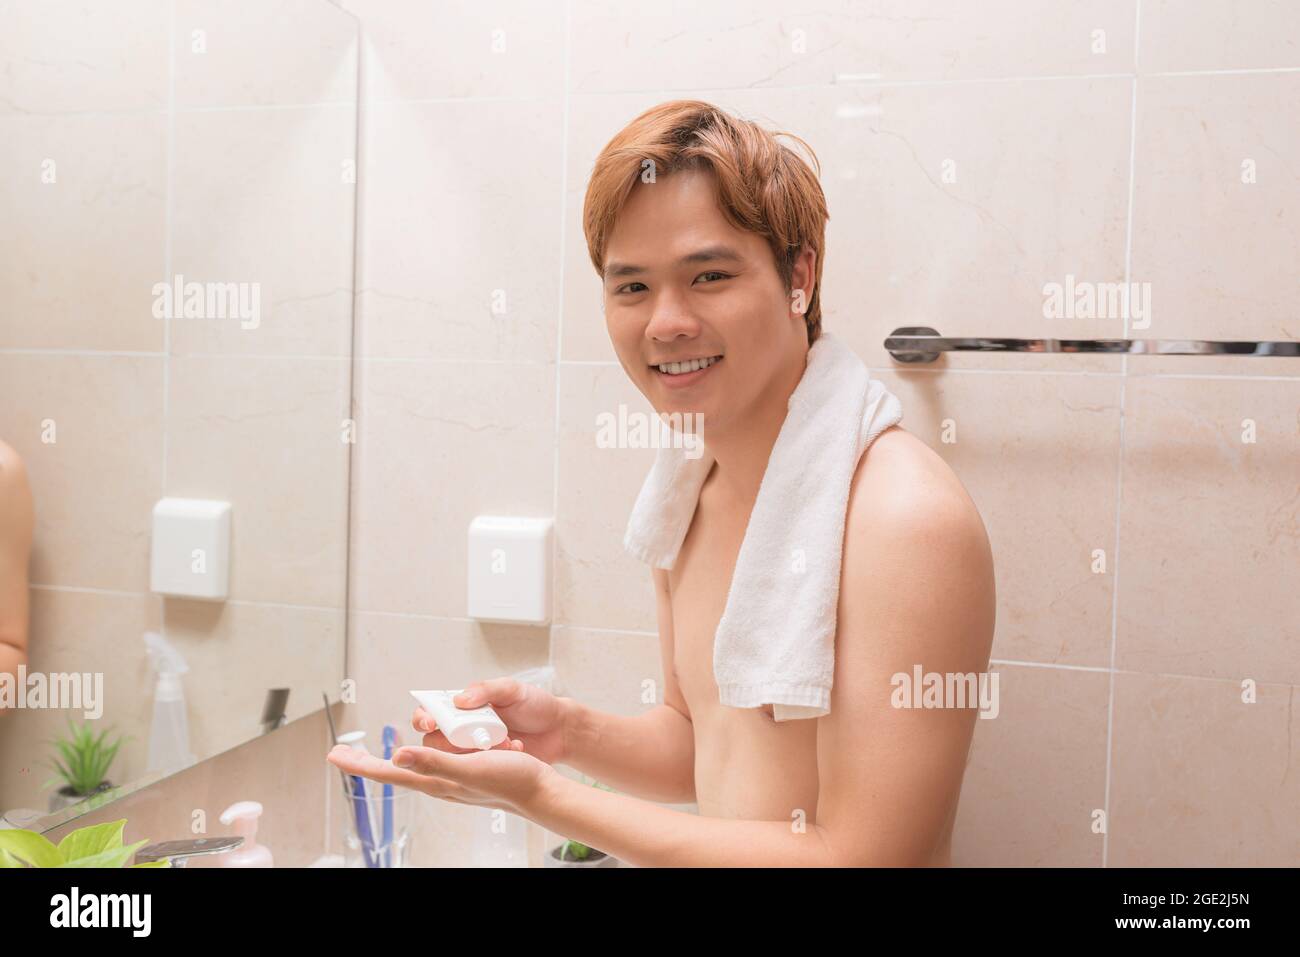 Porträt eines schönen lächelnden gesunden Mannes, der Schaum zum Waschen auf sein Gesicht aufschäumt. Stockfoto